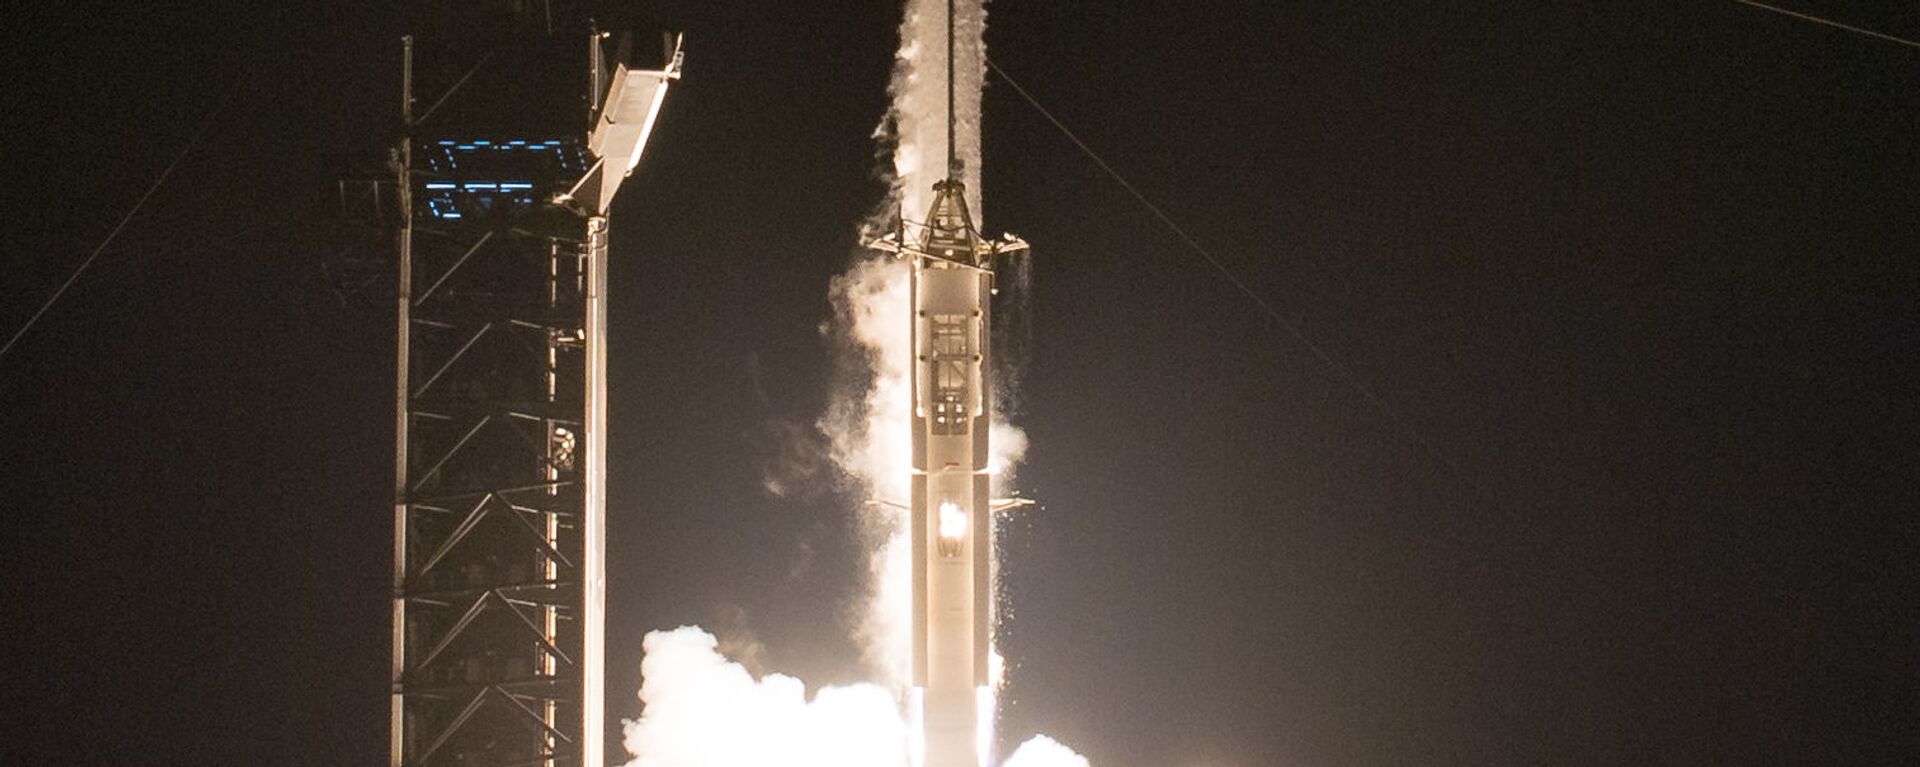 إطلاق مركبة سبيس إكس والتي تحمل اسم كرو دراغون عن طريق صاروخ فالكون 9، من مركز كينيدي للفضاء التابع لناسا في كيب كانافيرال بولاية فلوريدا، الولايات المتحدة 16 نوفمبر 2020 - سبوتنيك عربي, 1920, 20.03.2021